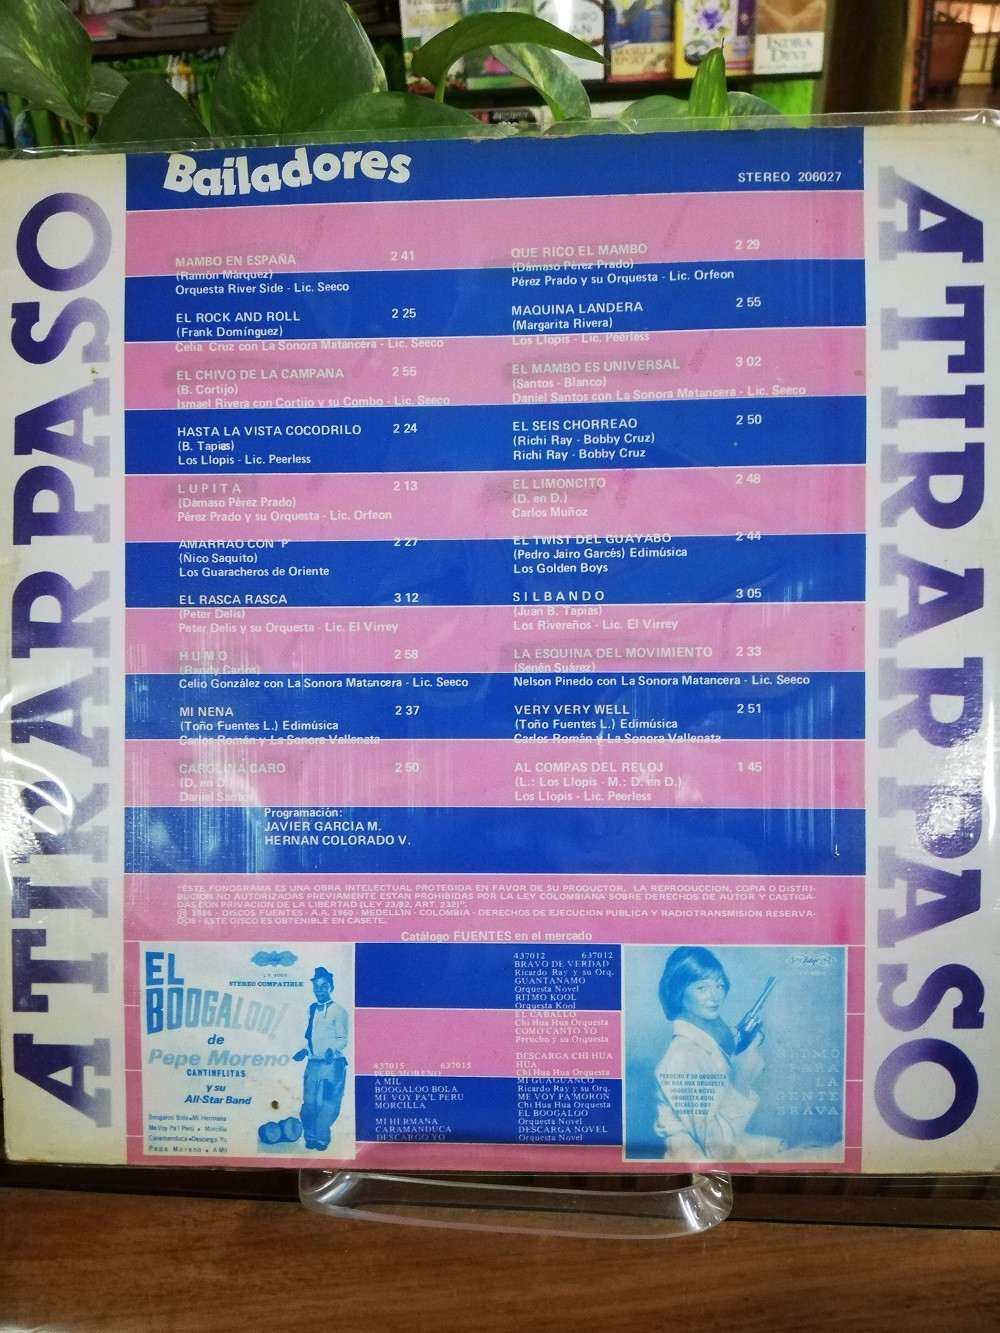 Imagen LP A TIRAR PASO BAILADORES - 20 EXITOS BAILABLES 2